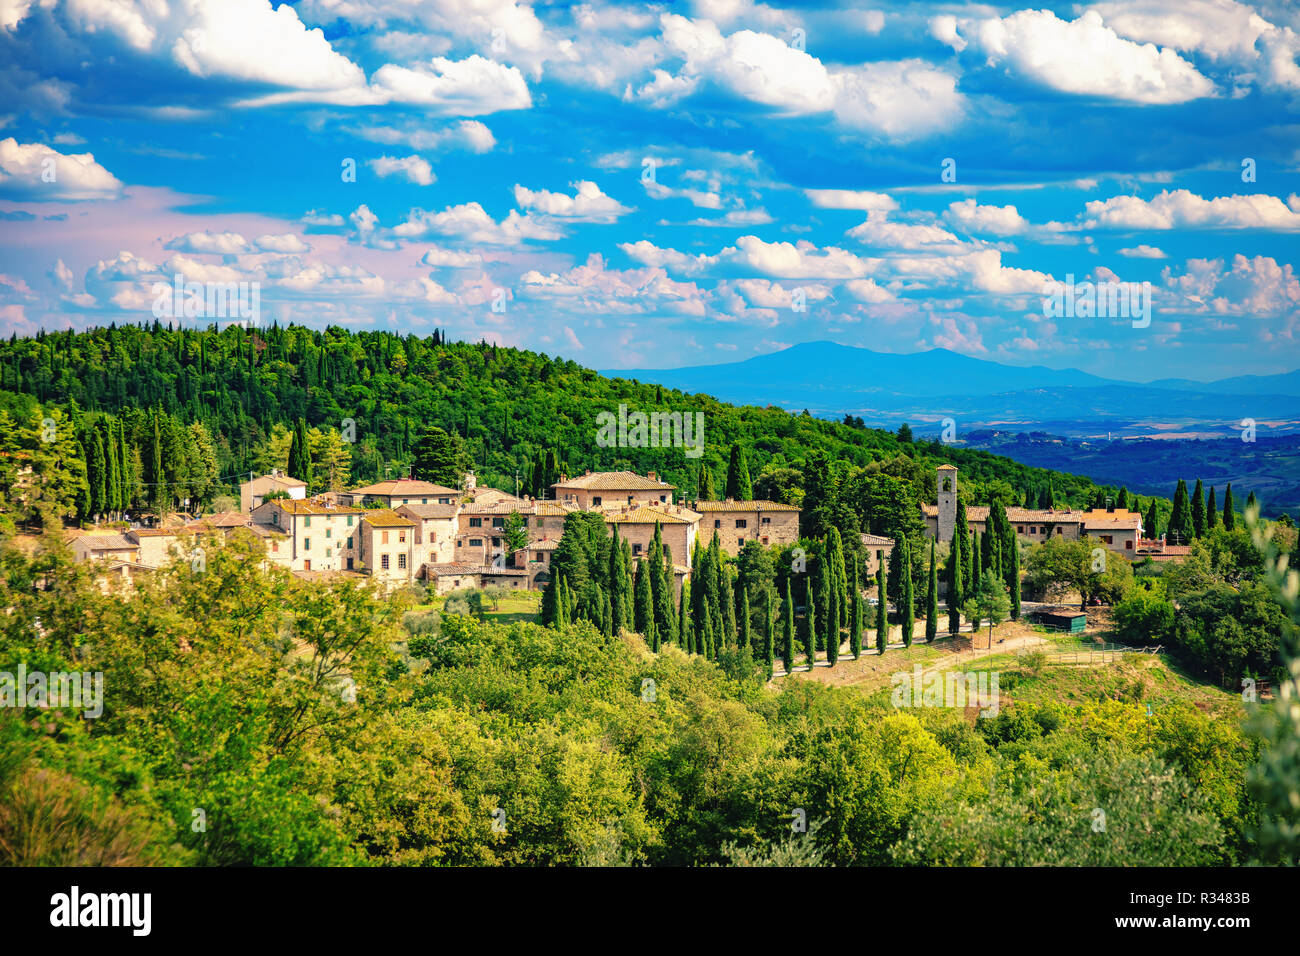 Vista del pintoresco pueblo de Fonterutoli, provincia de Siena, Toscana, Italia, rodeado de viñedos, olivos y cipreses. Foto de stock